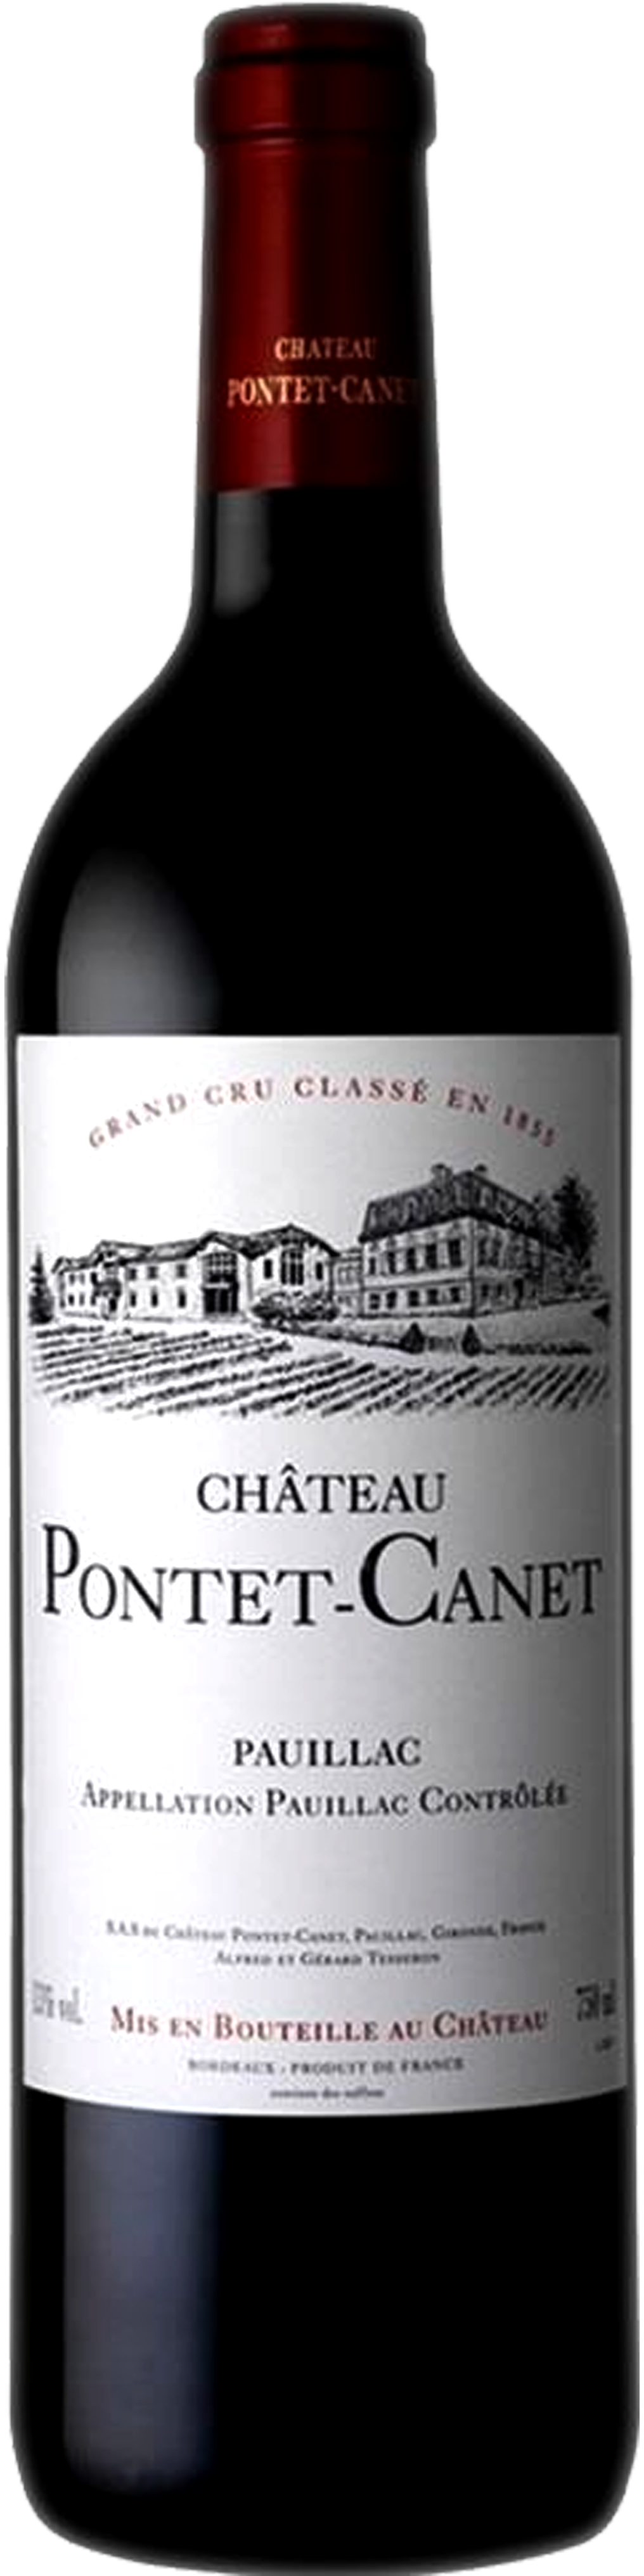 Bottle shot of 2005 Château Pontet Canet, 5ème Cru Pauillac